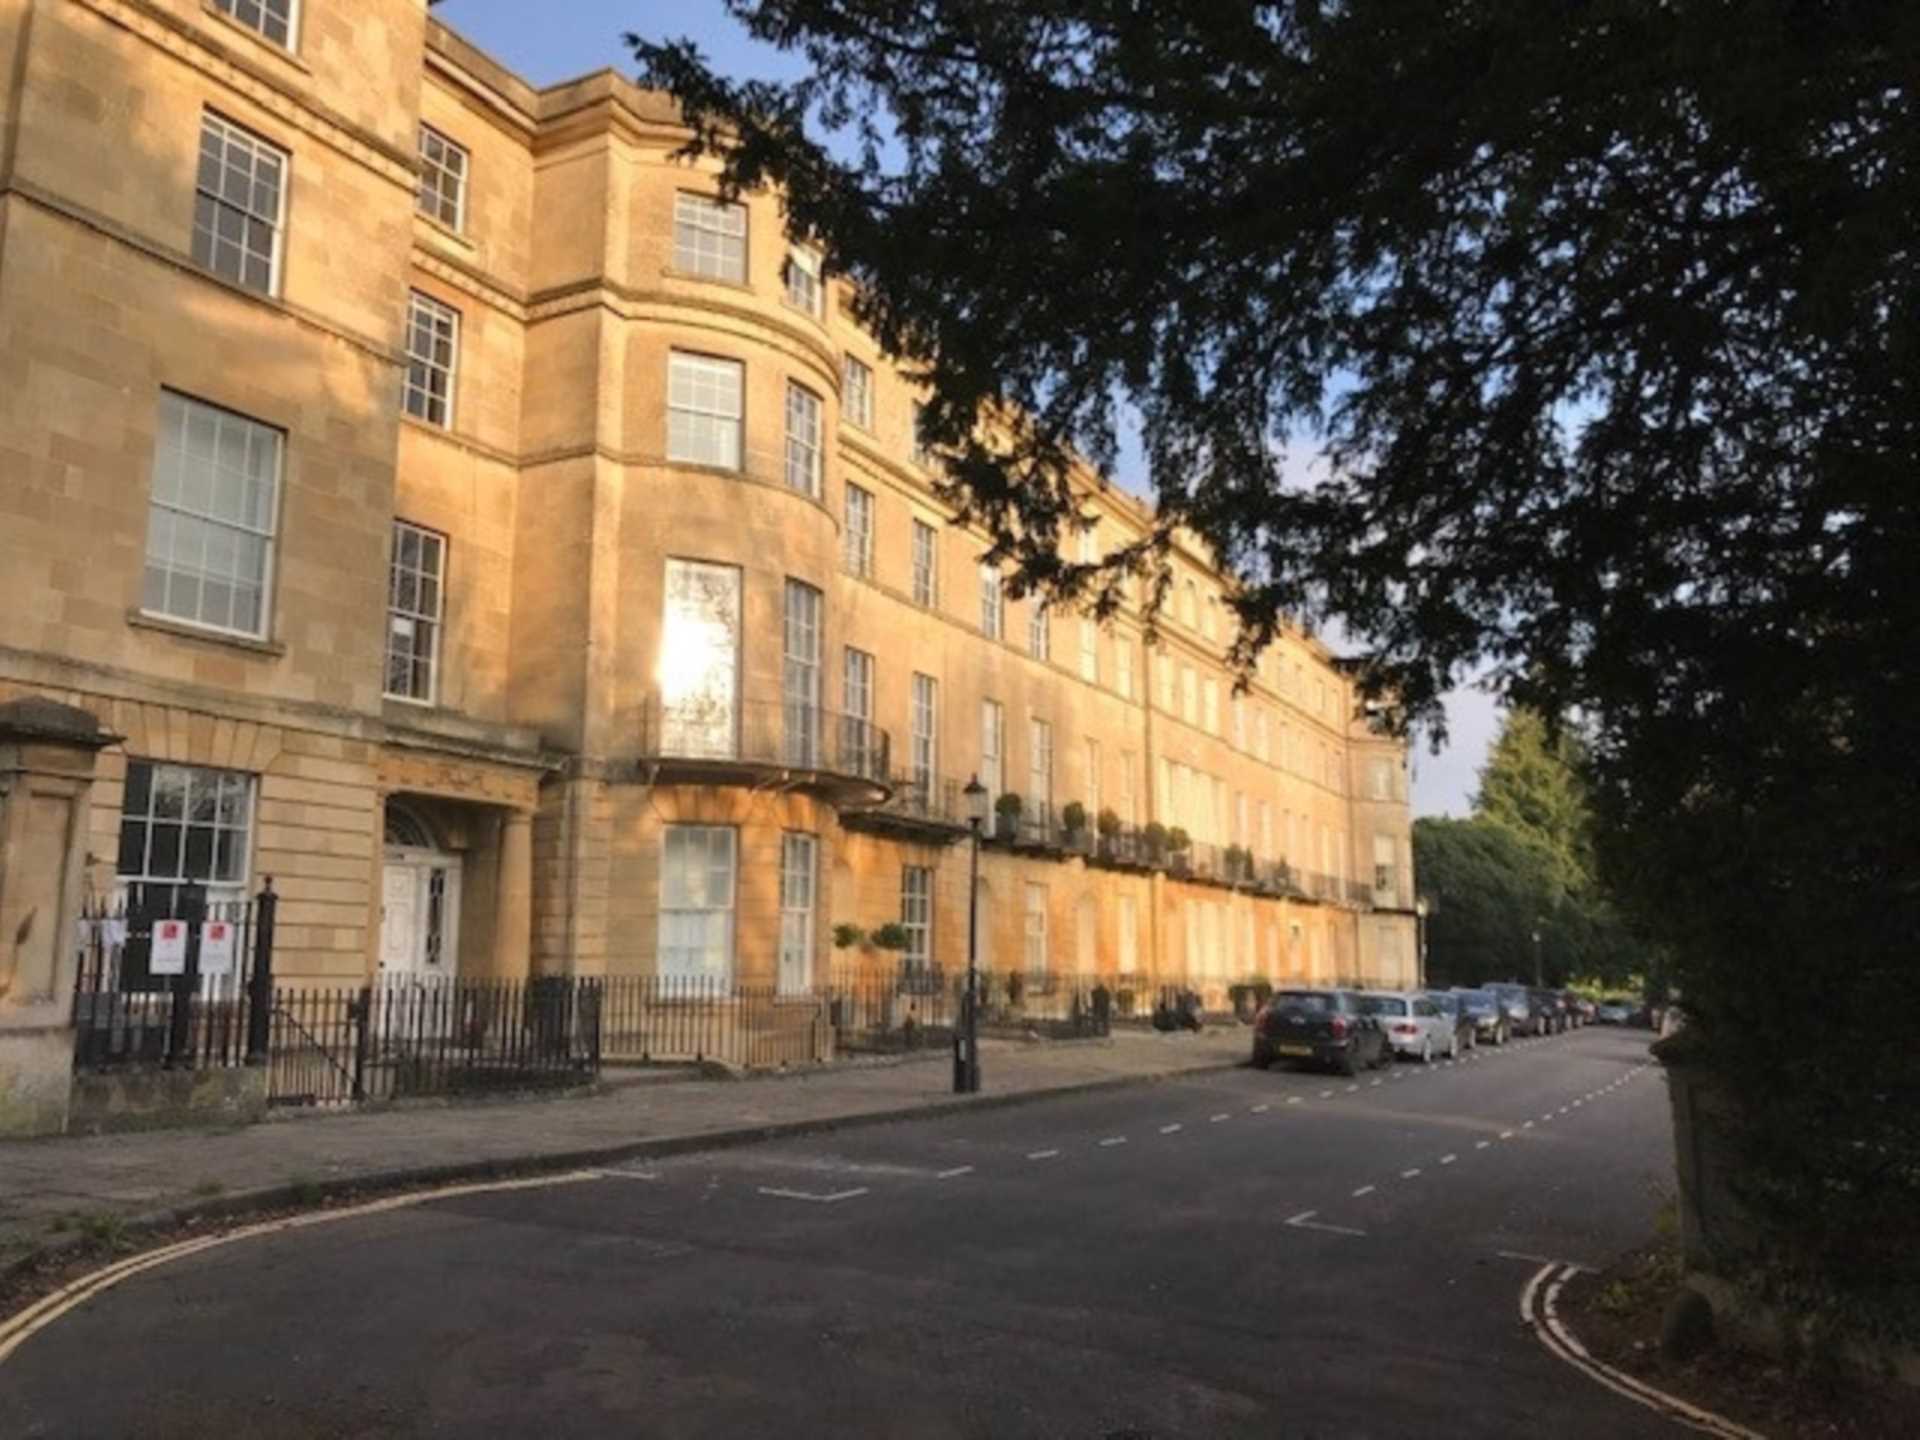 Sion Hill Place, Bath, Image 11